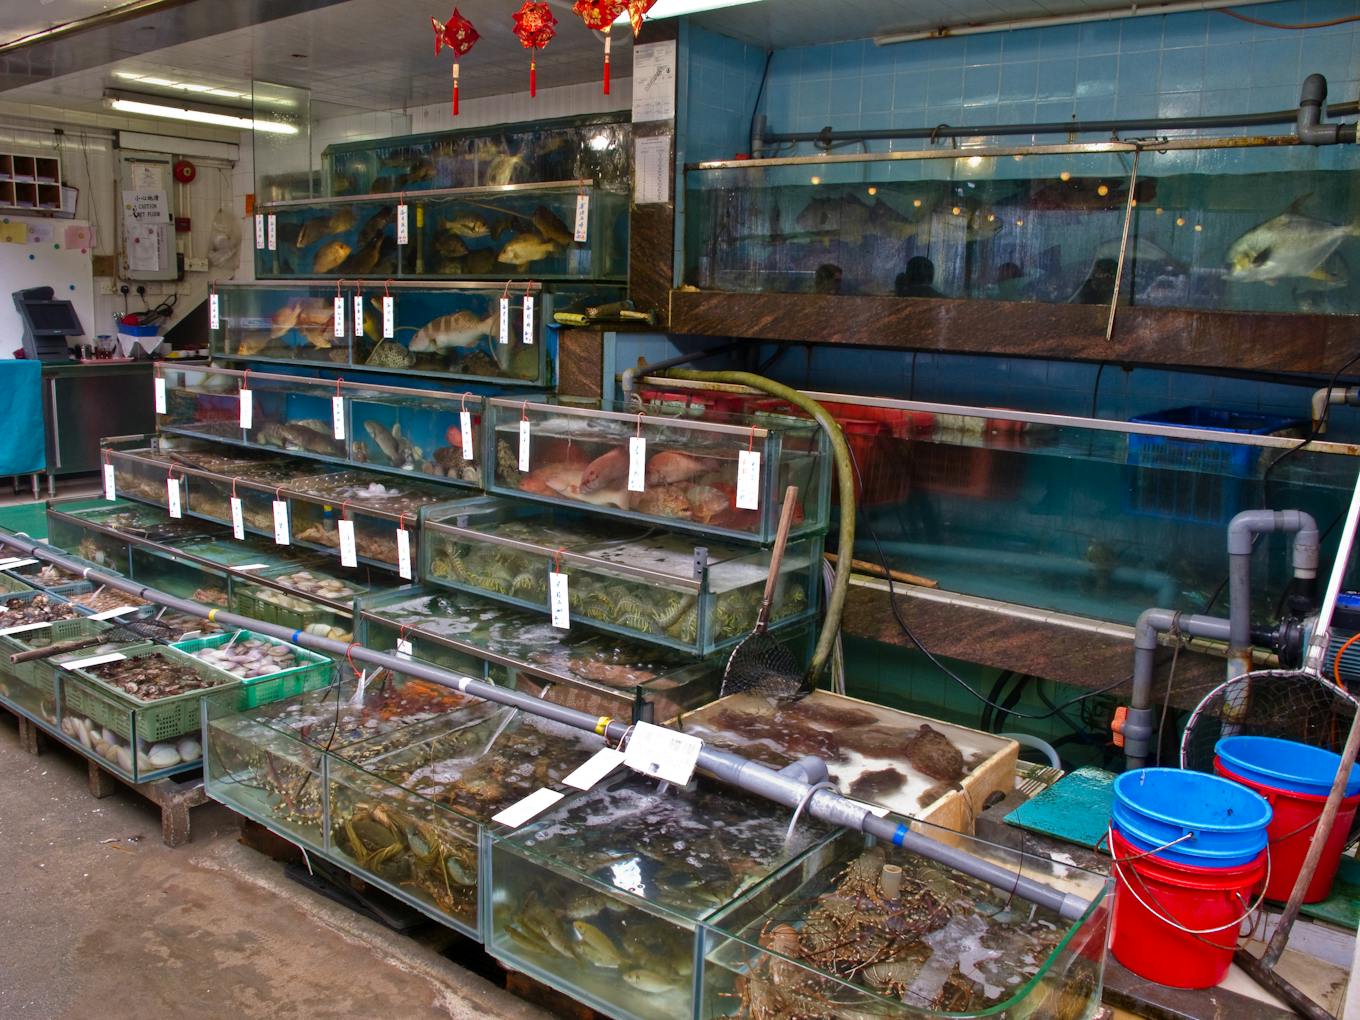 Seafood tanks at fish restaurant, Lamma island, Hong Kong.